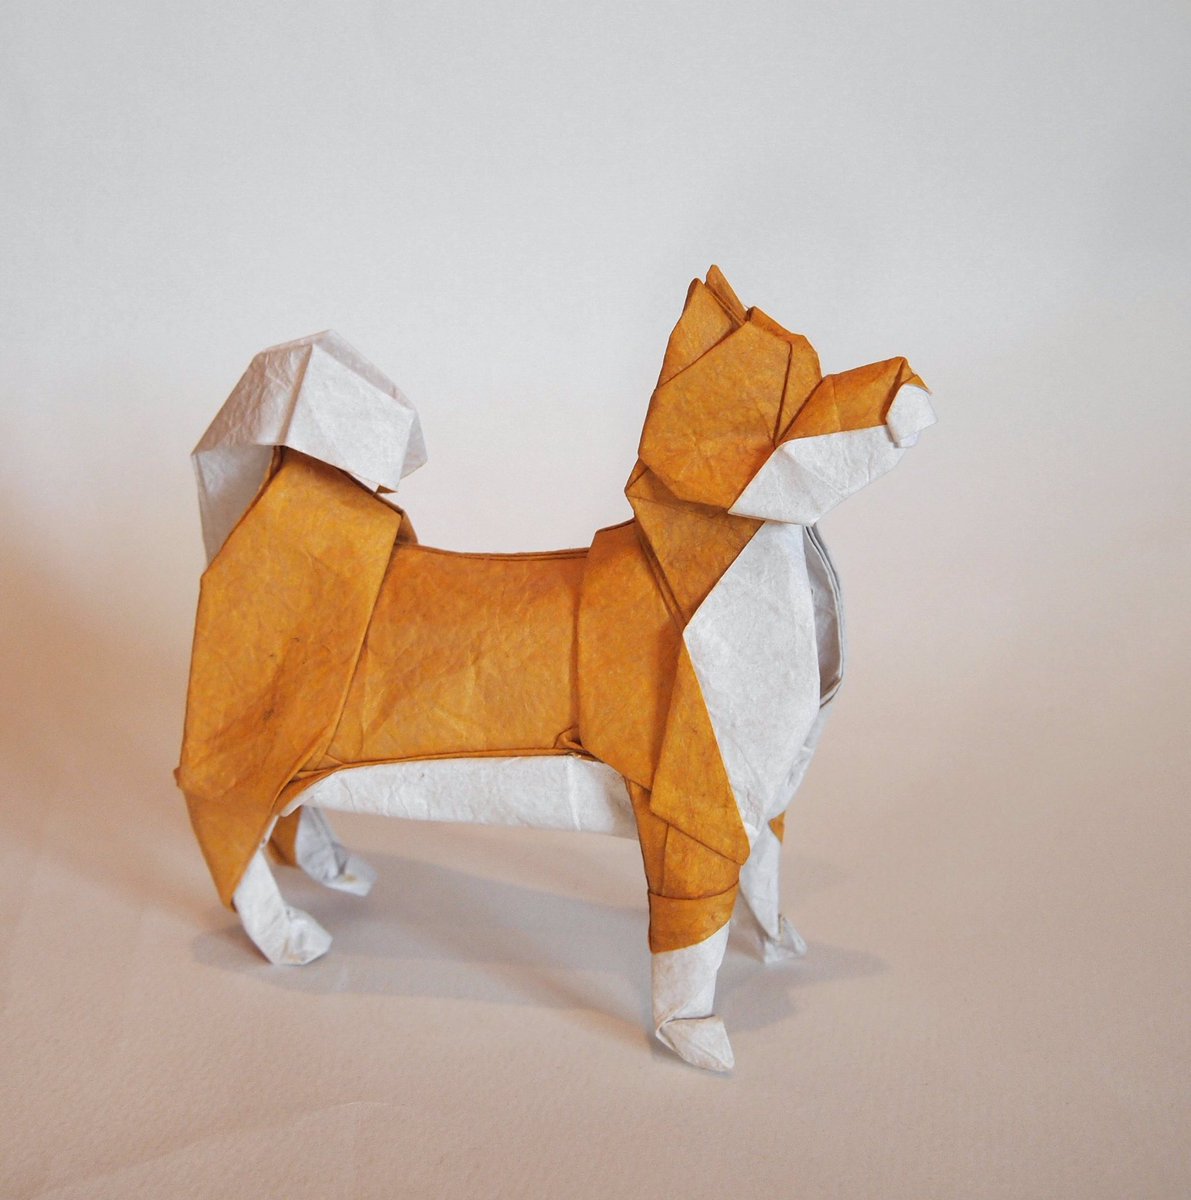 一匹柴犬 折り紙作品 柴犬 創作 折り 一匹柴犬 昔折った柴犬をリニューアルしました 下半身を改善 だいたい説明できる折り方にできたので いつか 折り図描きます Origami Dog 折り紙 折り紙作品 柴犬 T Co Trxaeevo1m Twitter